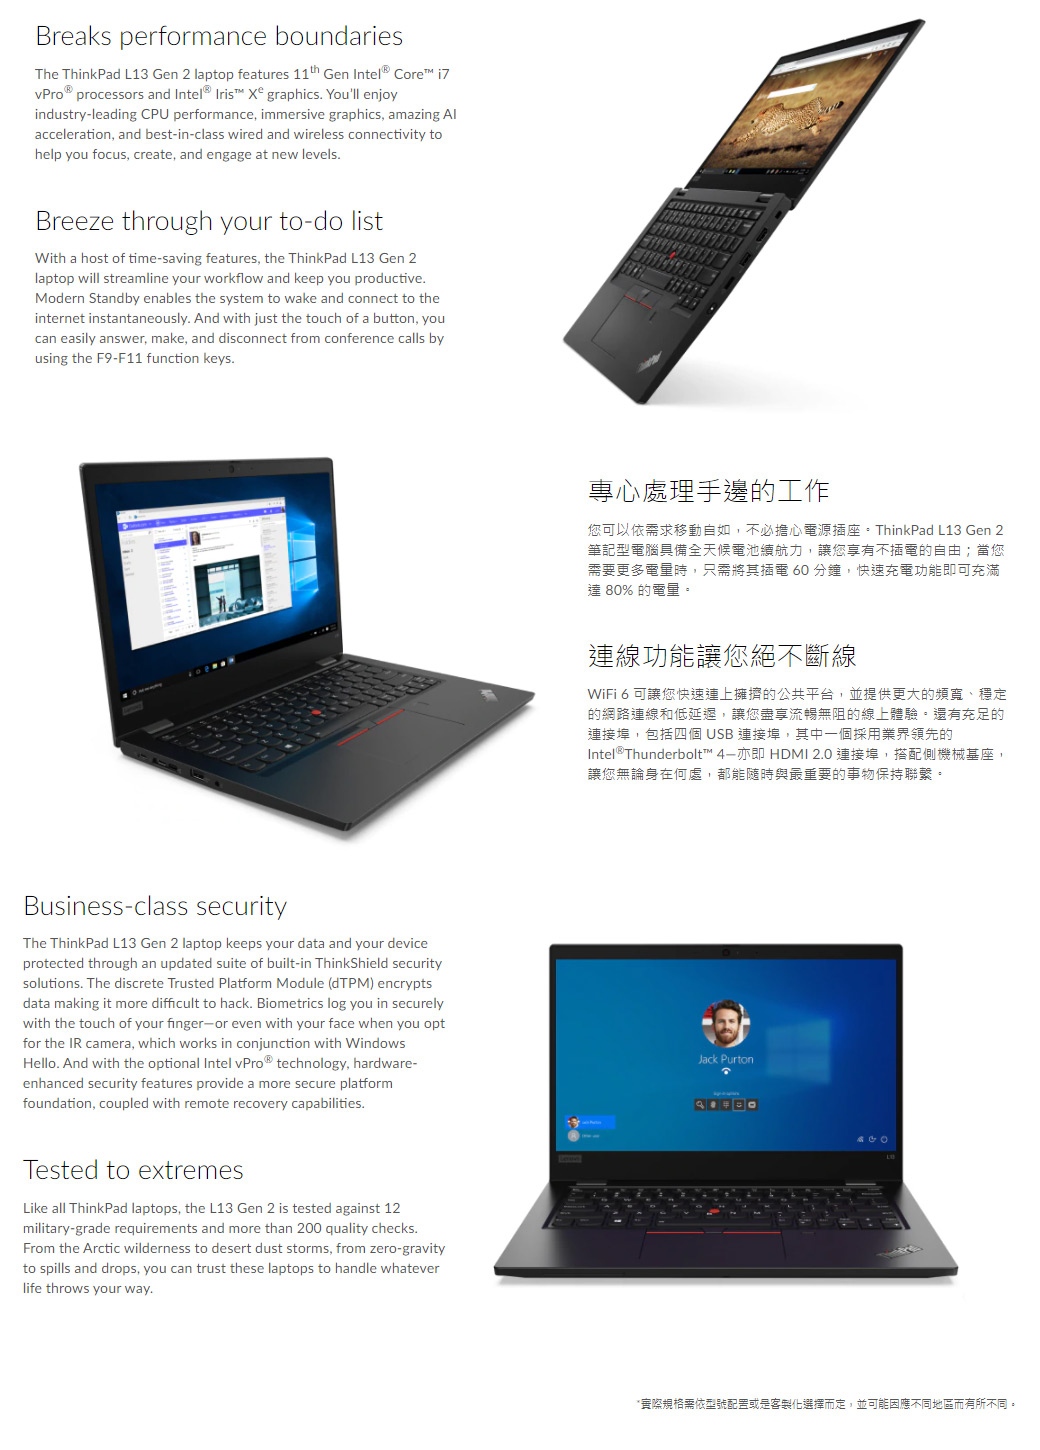 Lenovo ThinkPad L13 Gen2 20VHS06P00 黑(i5-1135G7/16G/512G PCIe/W10